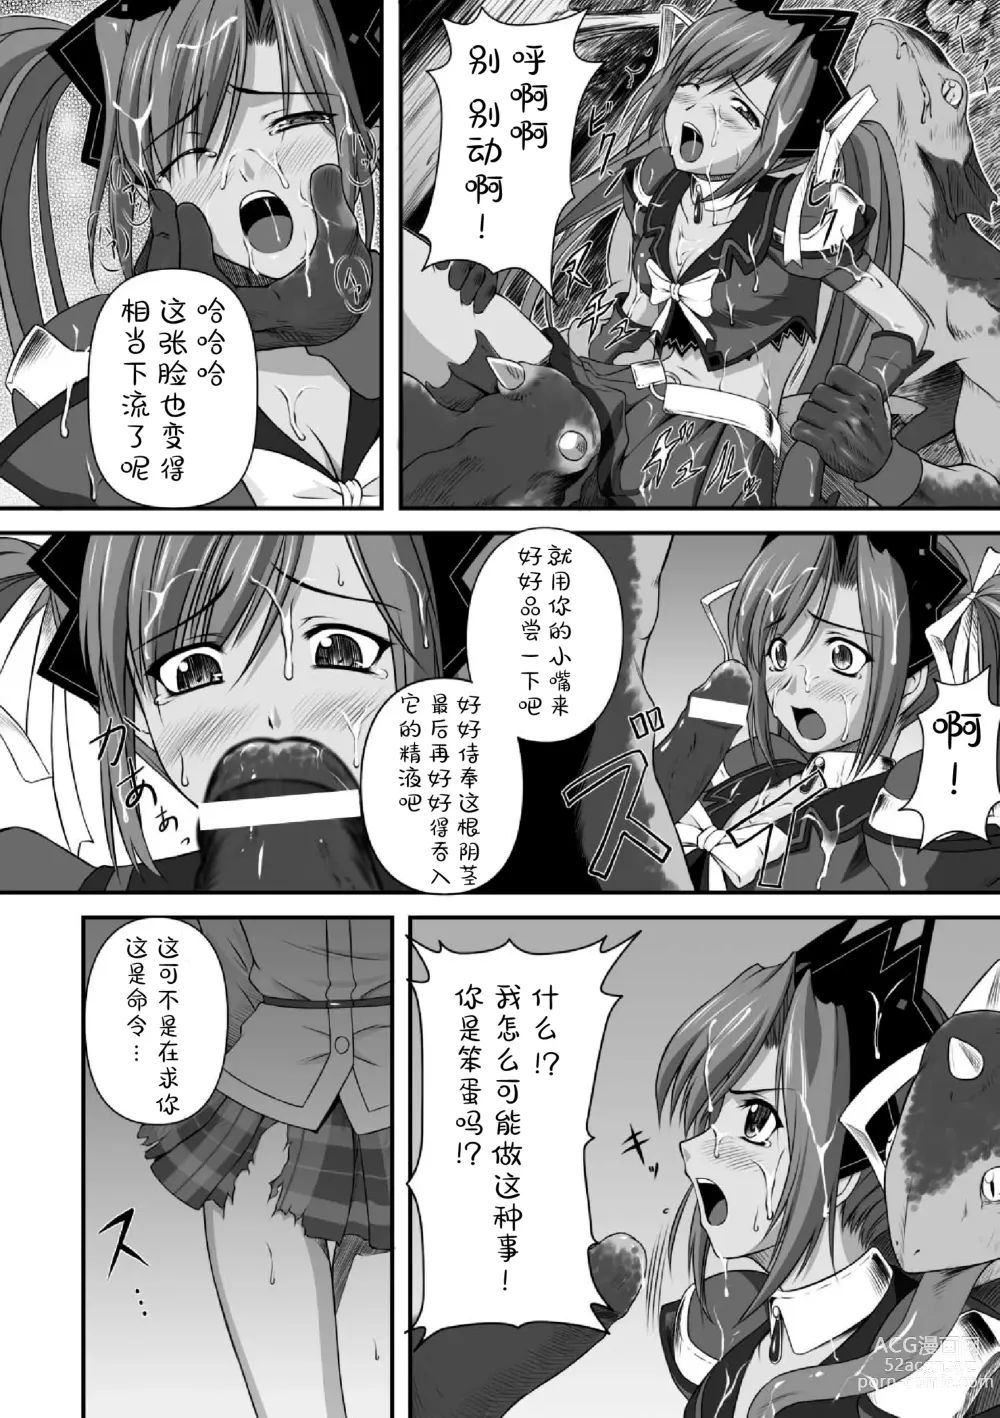 Page 25 of manga Ryoujoku no Rensa